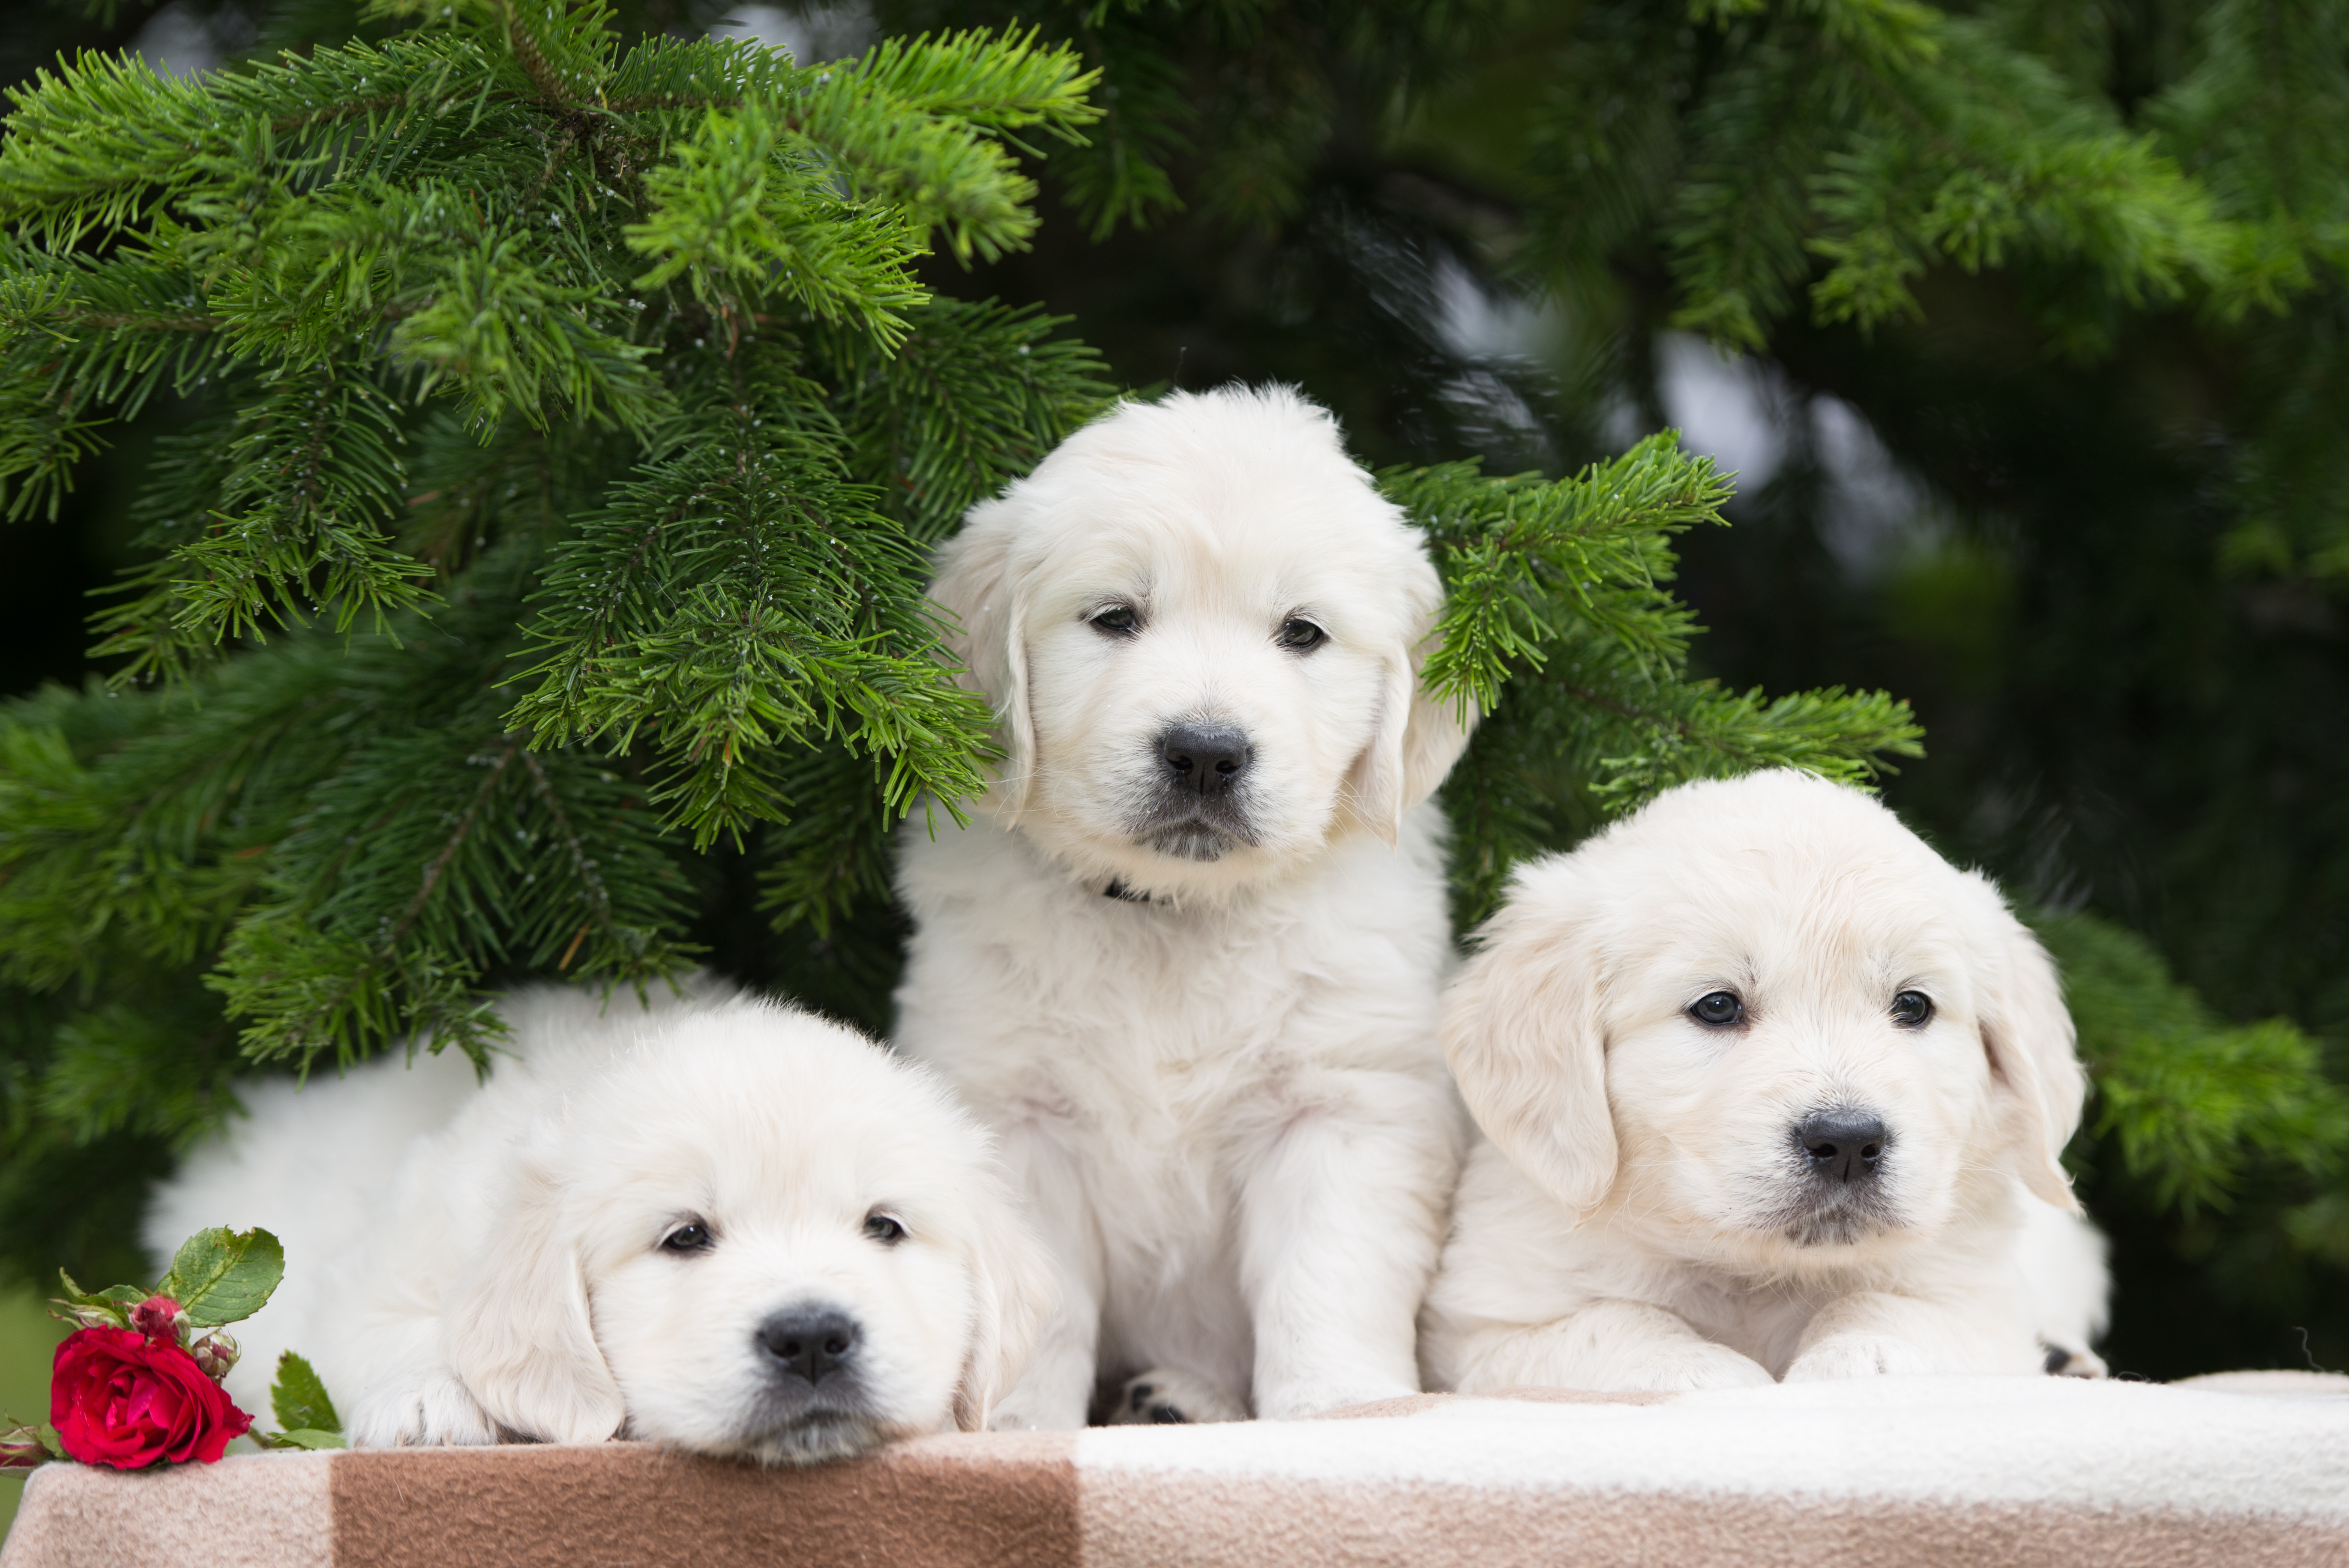 3 animals dogs. Голден ретривер белый. Золотистый ретривер щенок. Золотистый ретривер белый. Золотистый ретривер белый щенок.